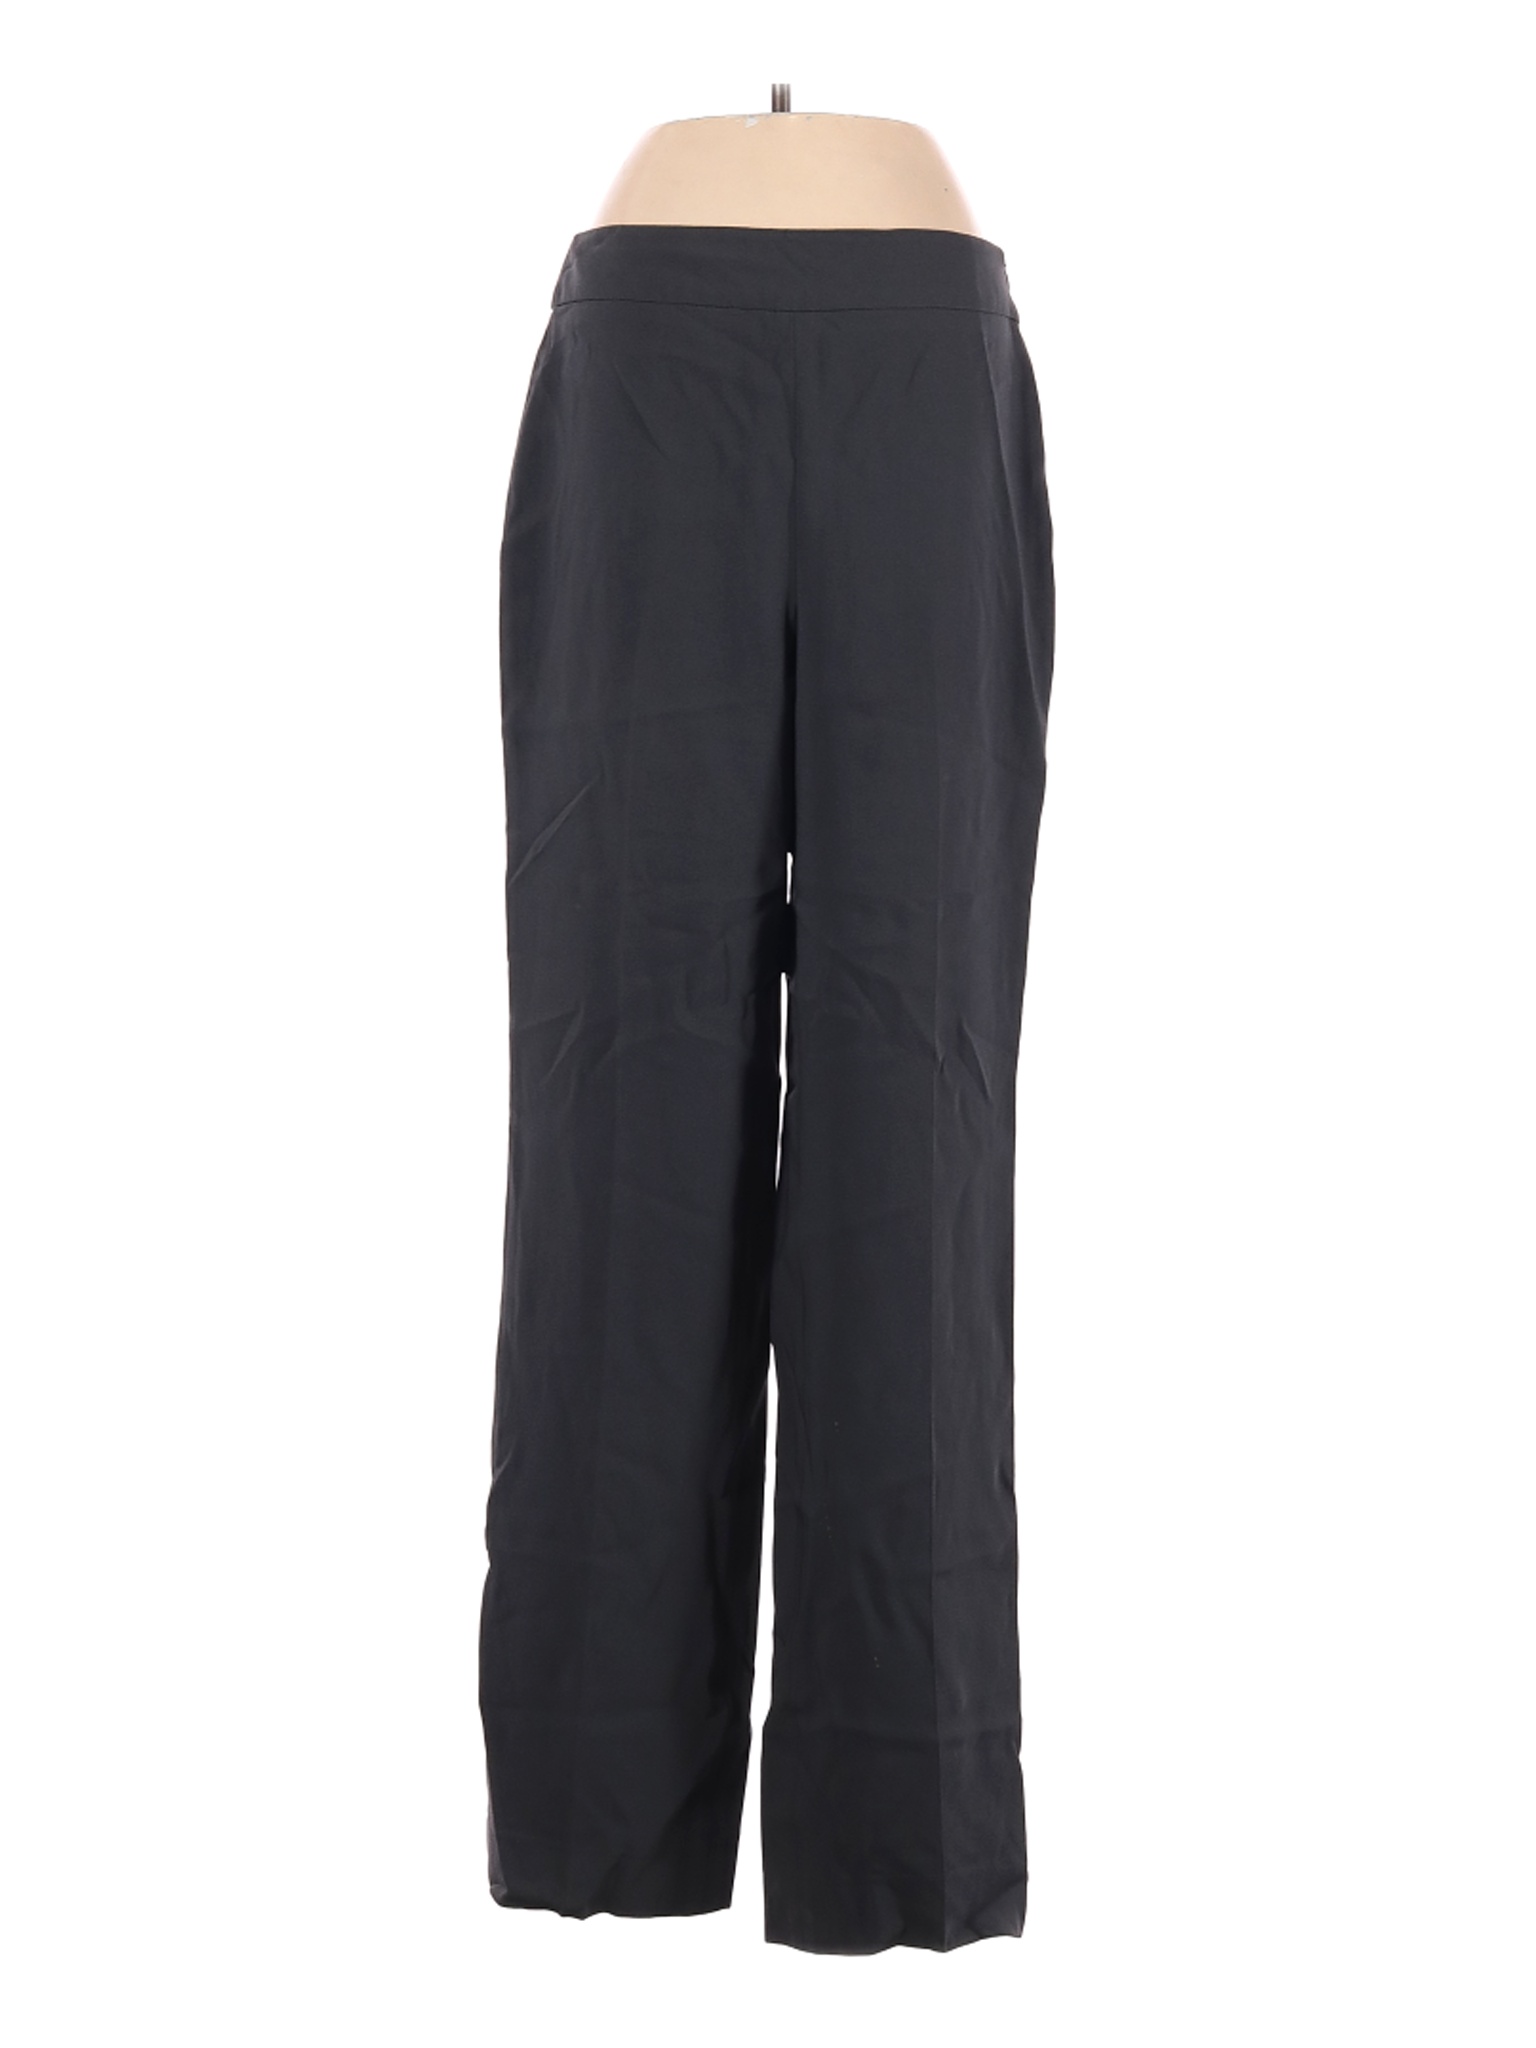 Louben Women Black Casual Pants 2 | eBay